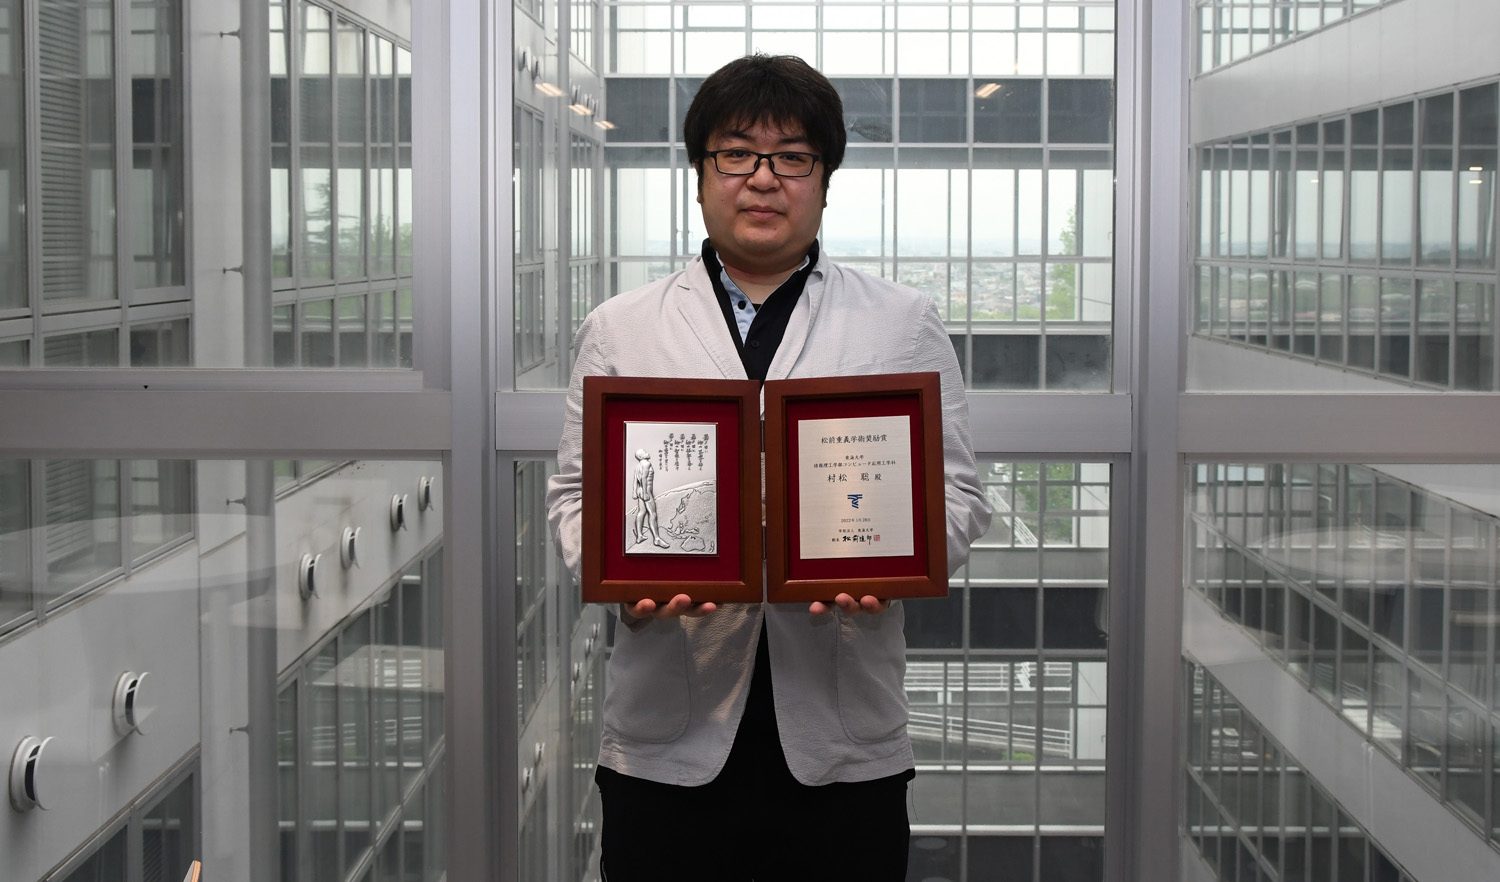 コンピュータ応用工学科の村松聡准教授が松前重義学術奨励賞を受賞しました